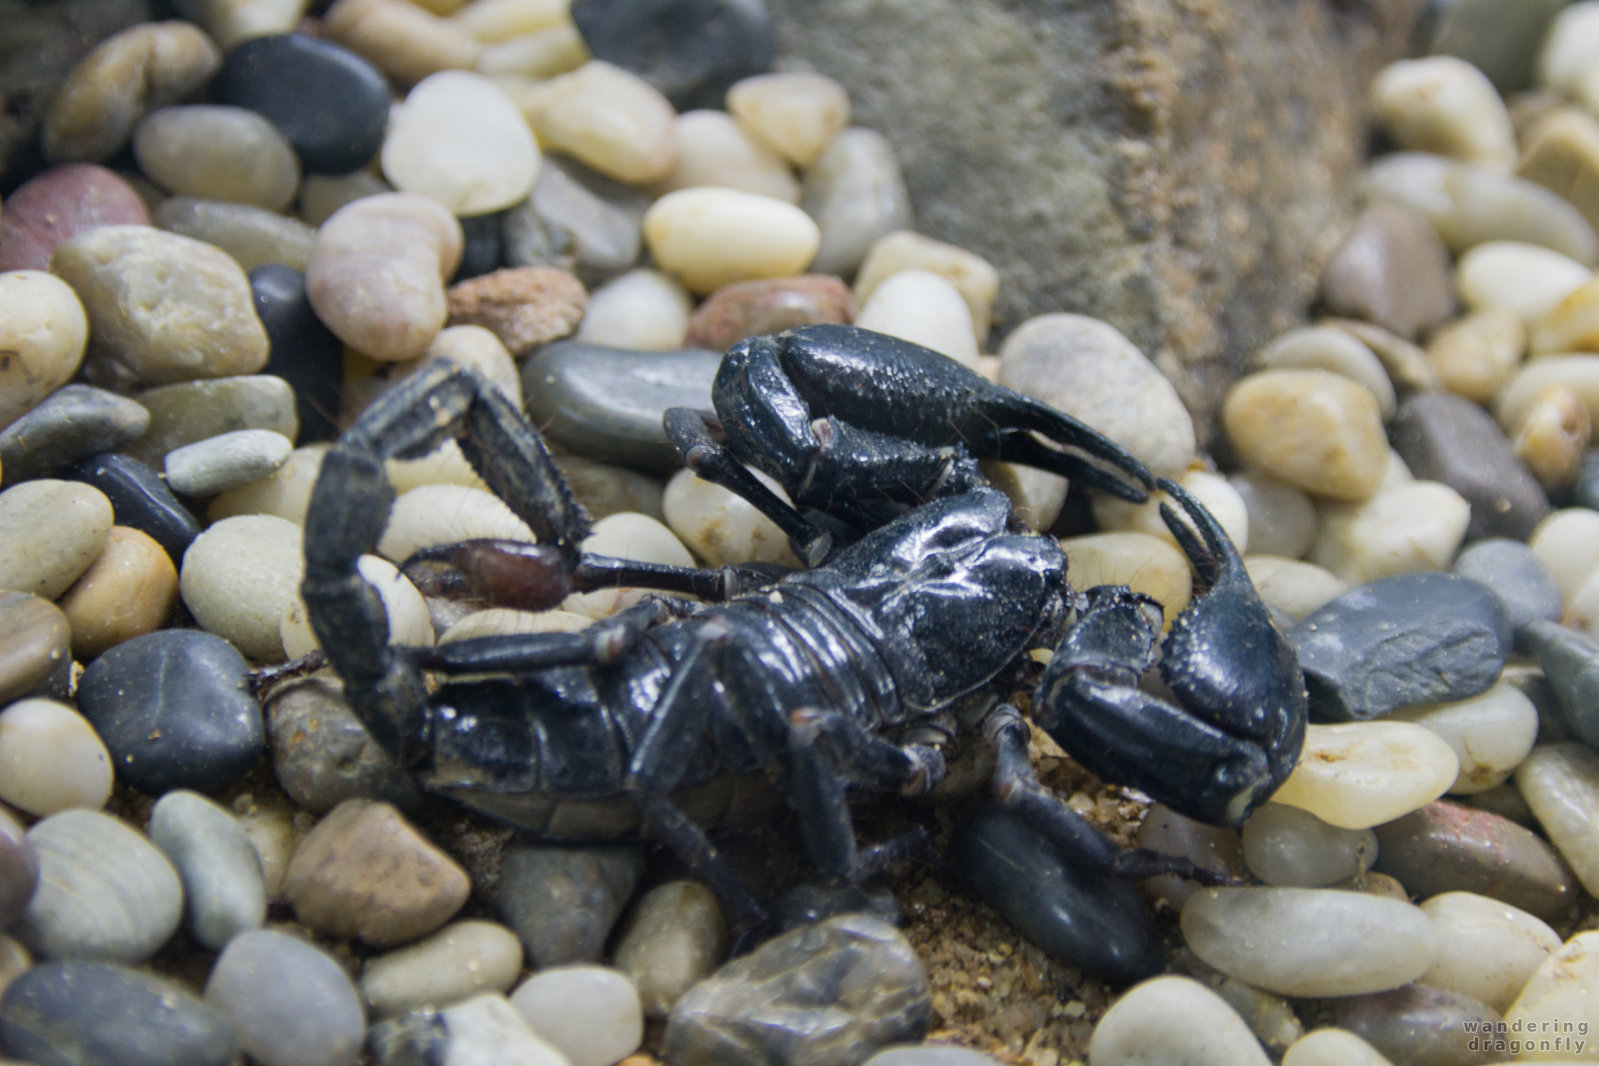 Black scorpion -- scorpion